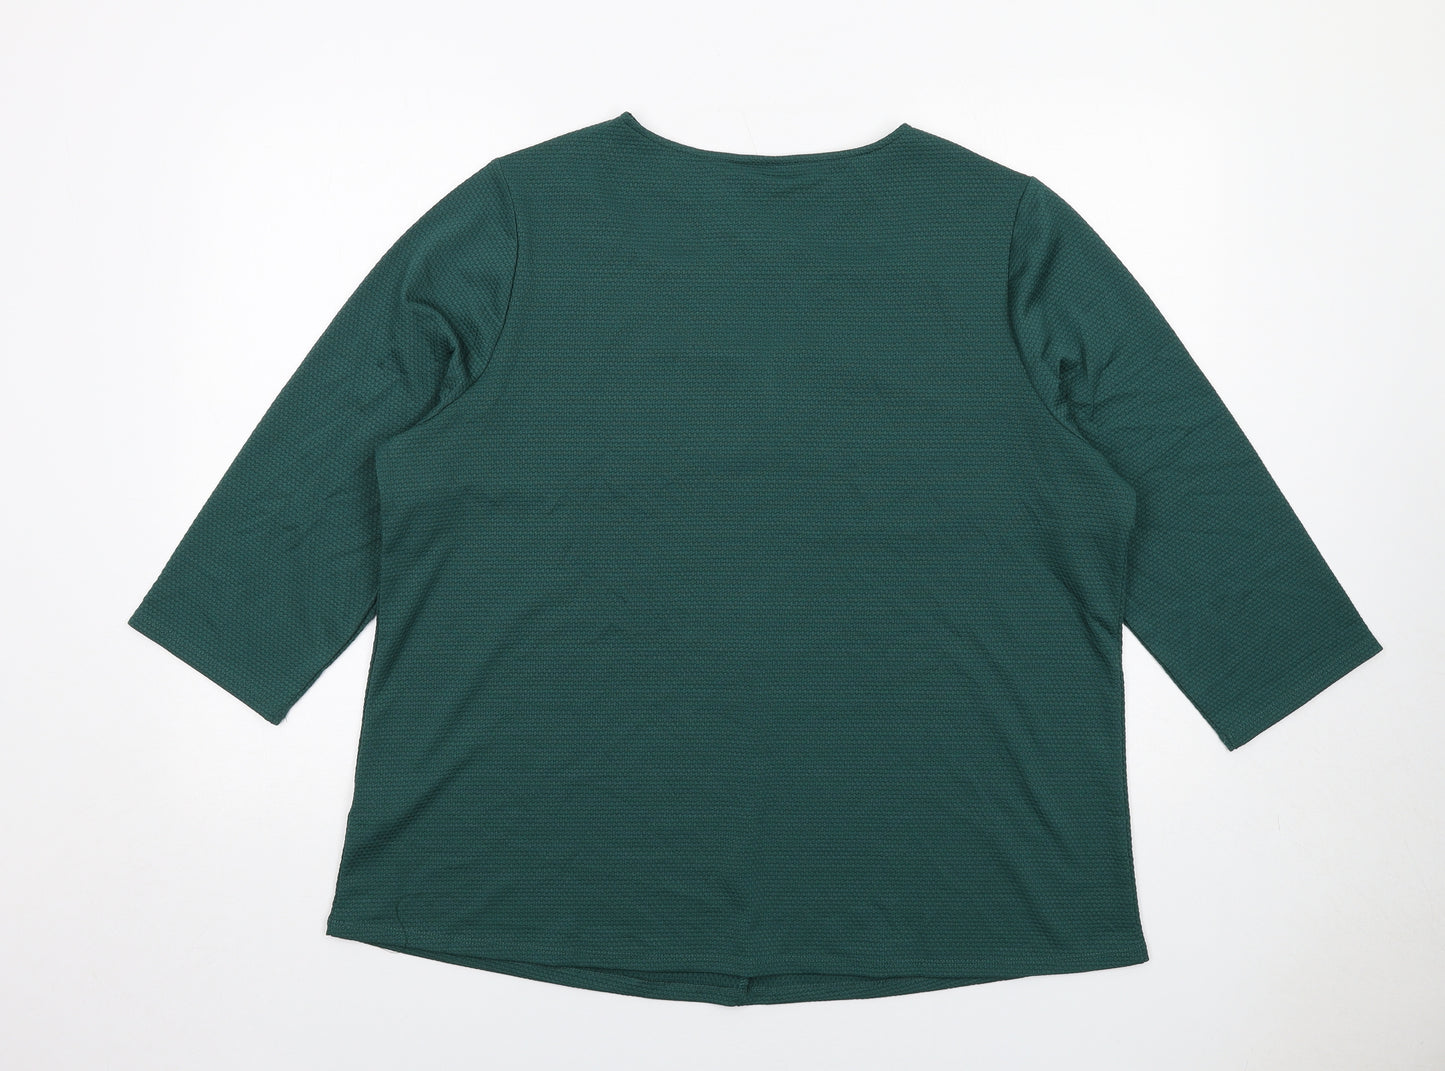 Julipa Womens Green Polyester Basic Blouse Size 20 V-Neck